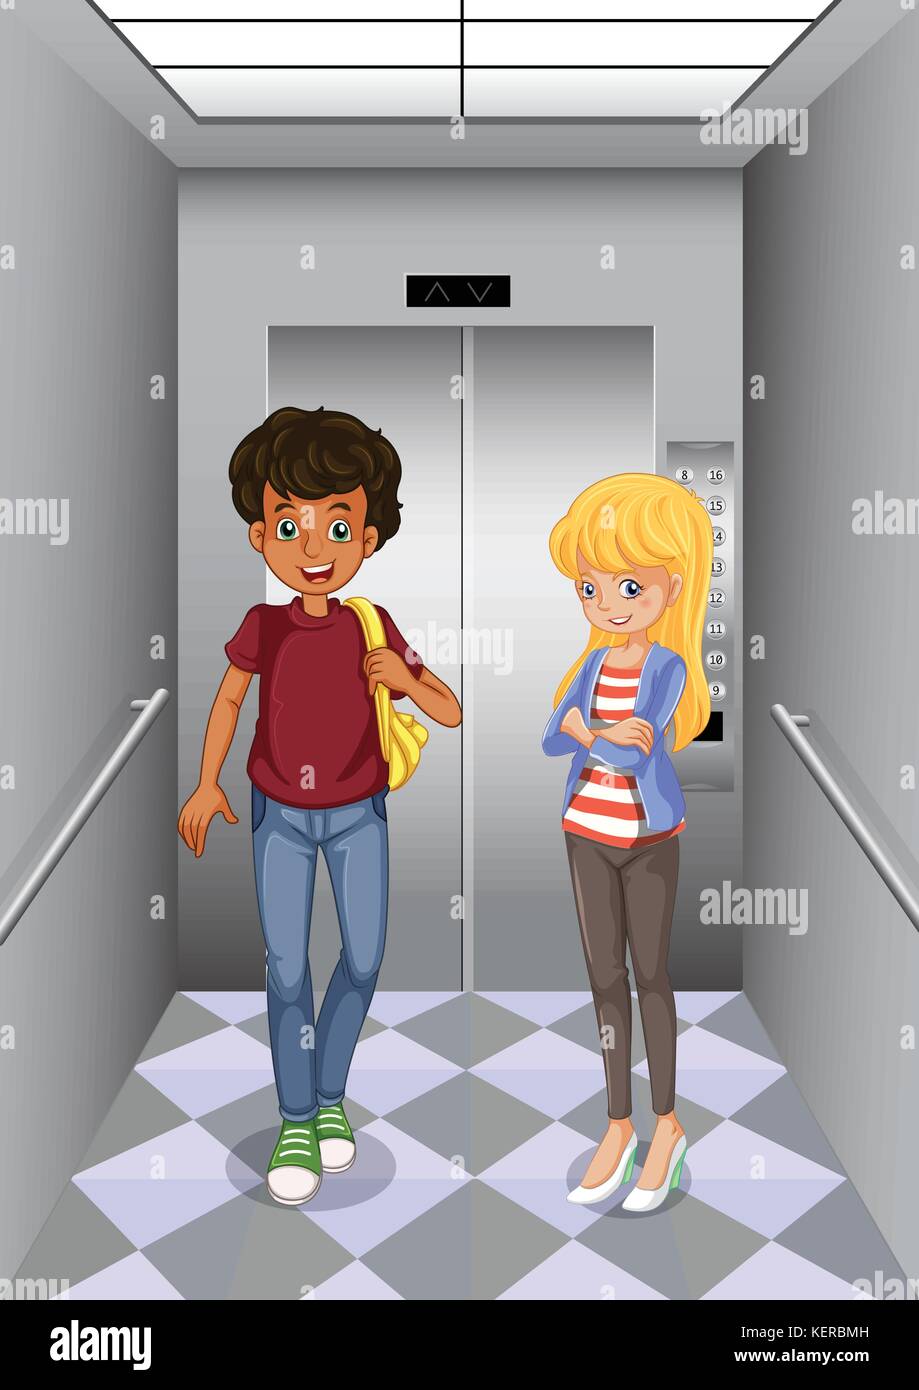 Illustation der beiden Jugendlichen am Aufzug Stock Vektor